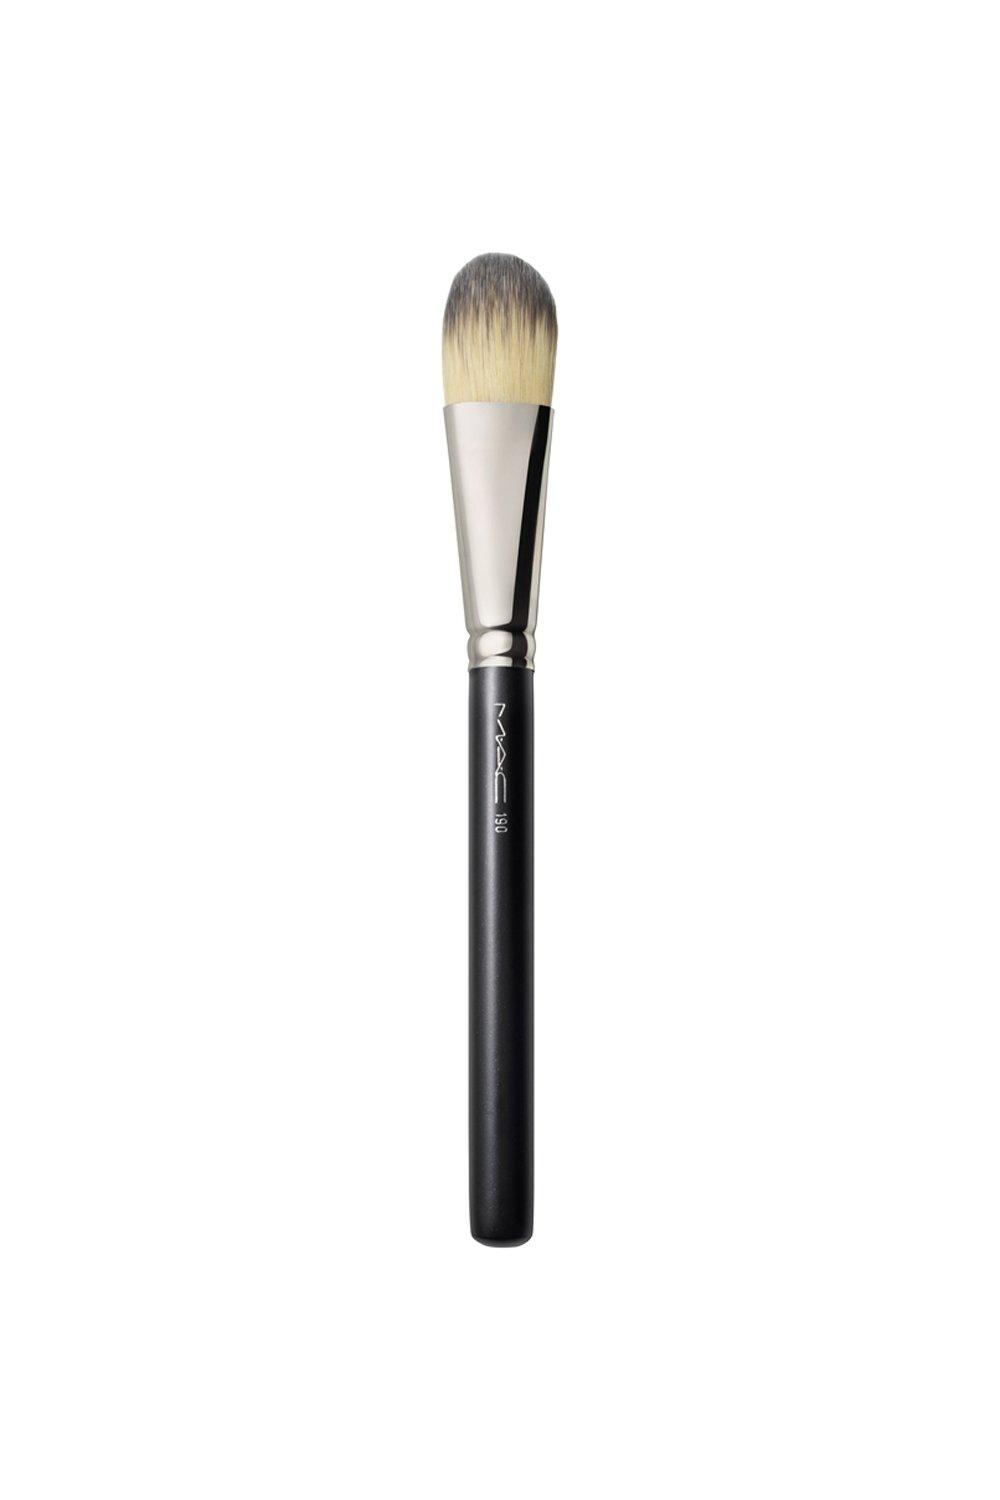 MAC Cosmetics 190 Flat Foundation Brush